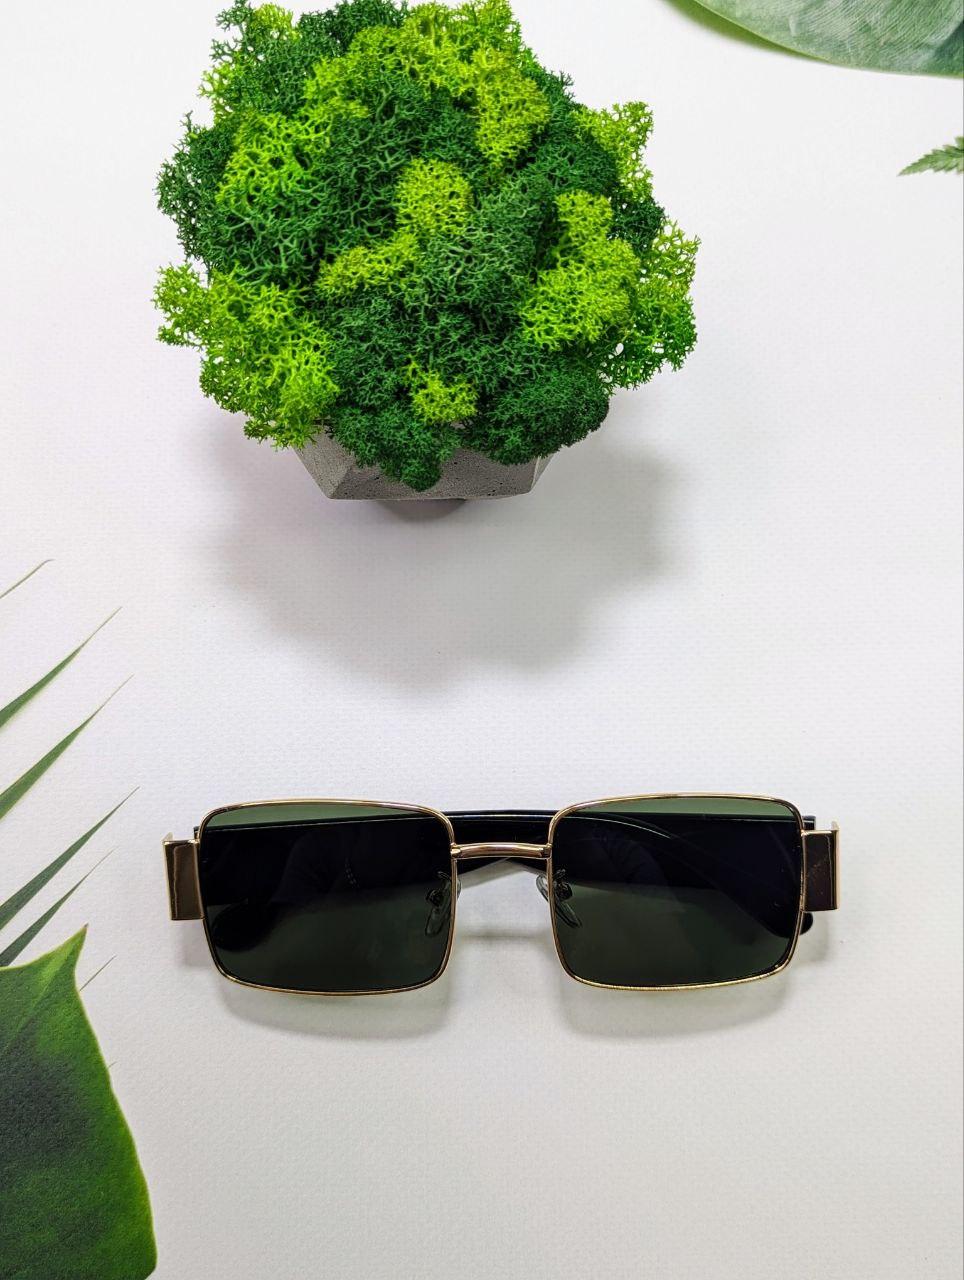 Сонцезахисні окуляри зелені, прямокутні, чоловічі/жіночі, з поляризацією в металевій оправі